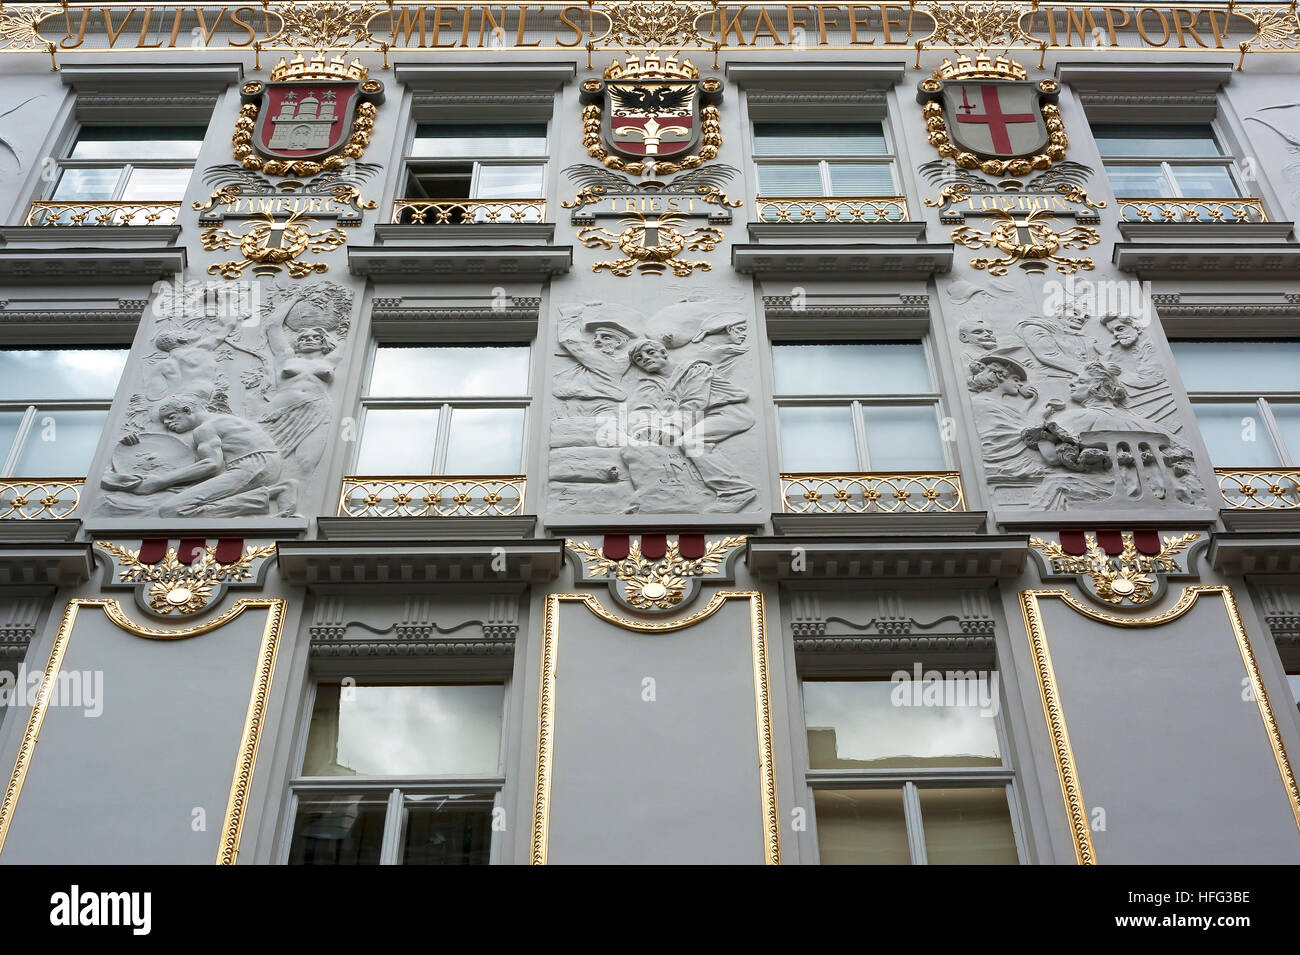 Fassade mit Stuckreliefs, Heimat der Kaffeerösterei Julius Meinl, Wien, Österreich Stockfoto